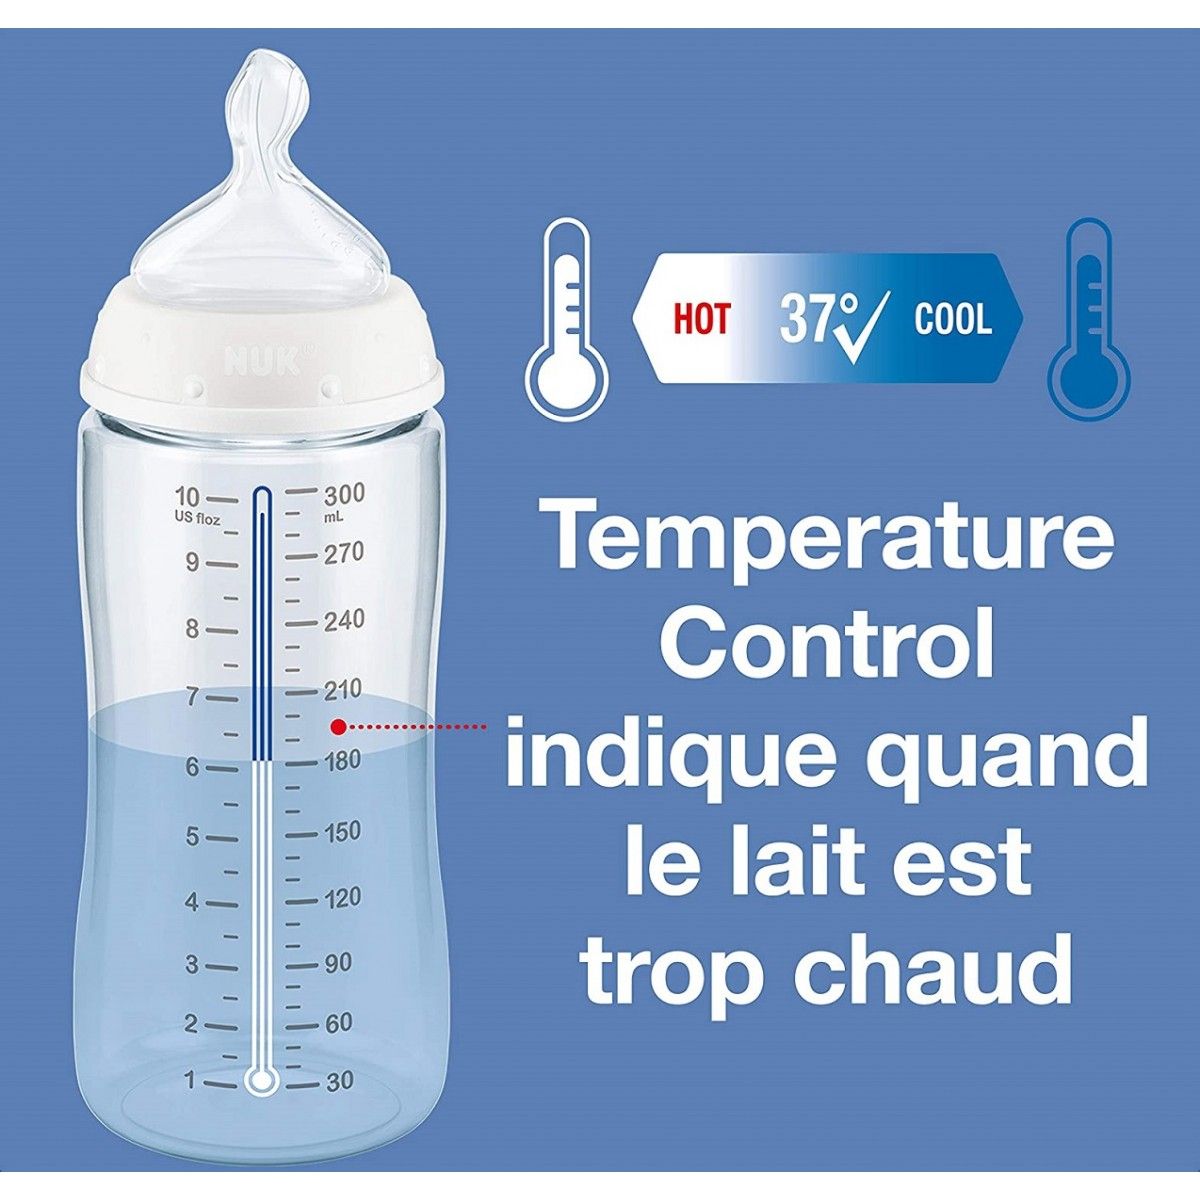 NUK First Choice+ - Biberons pour bébé - 6 à 18 mois - Valve anti-colique -  Sans BPA - 300 ml - Tétine en silicone - Avec contrôle de la température 